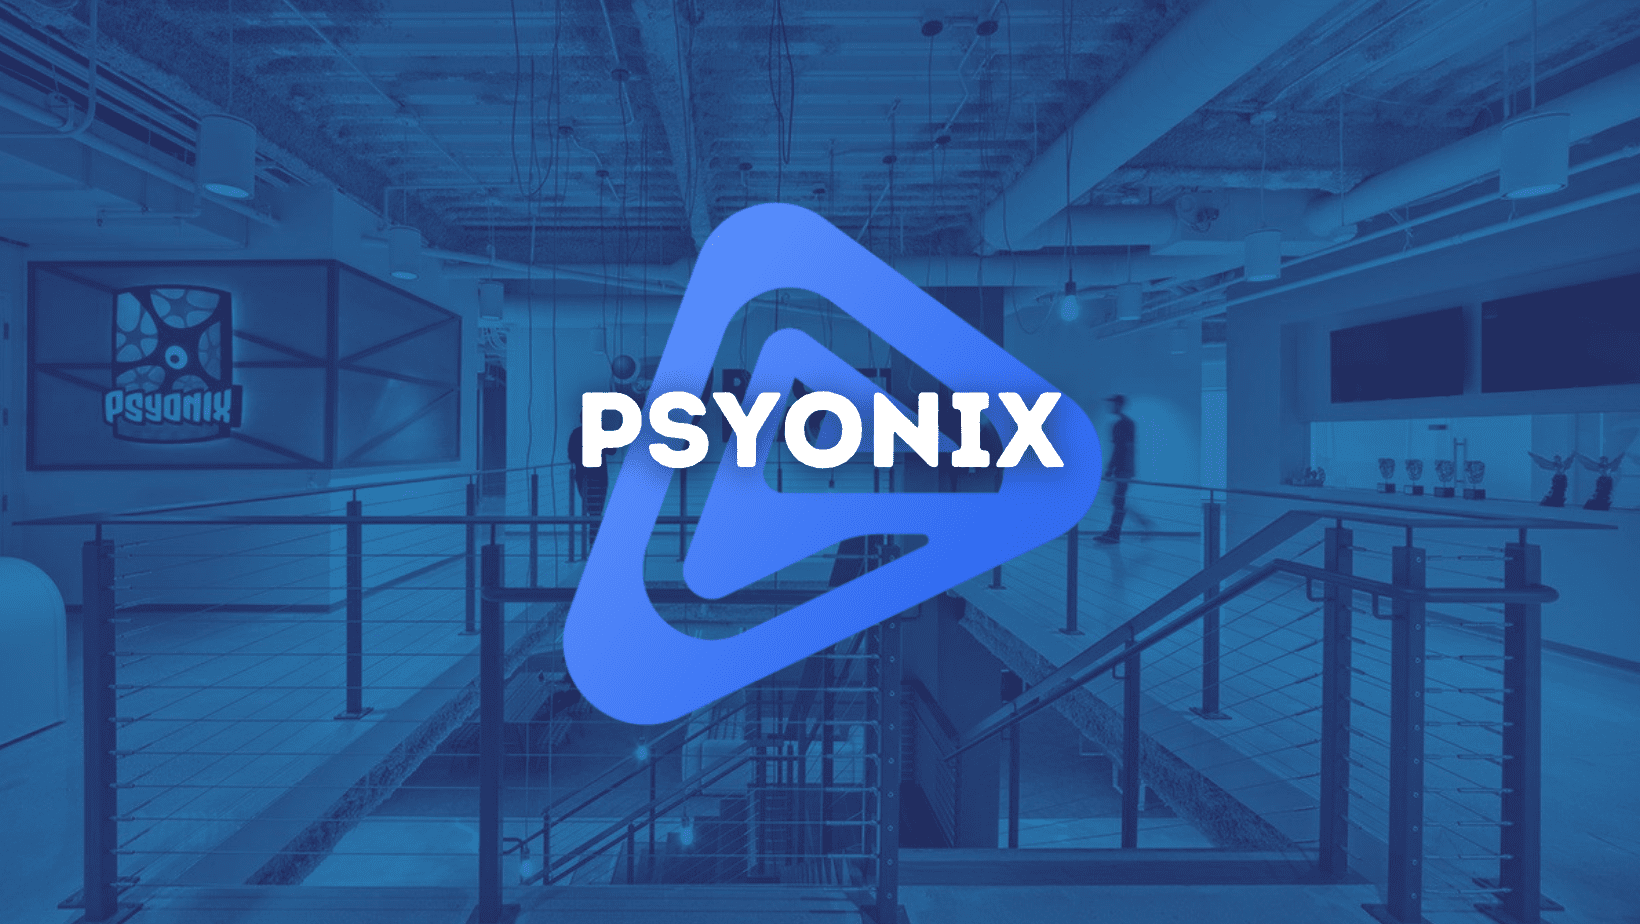 Psyonix: The Company Behind The Rocket League Phenomenon